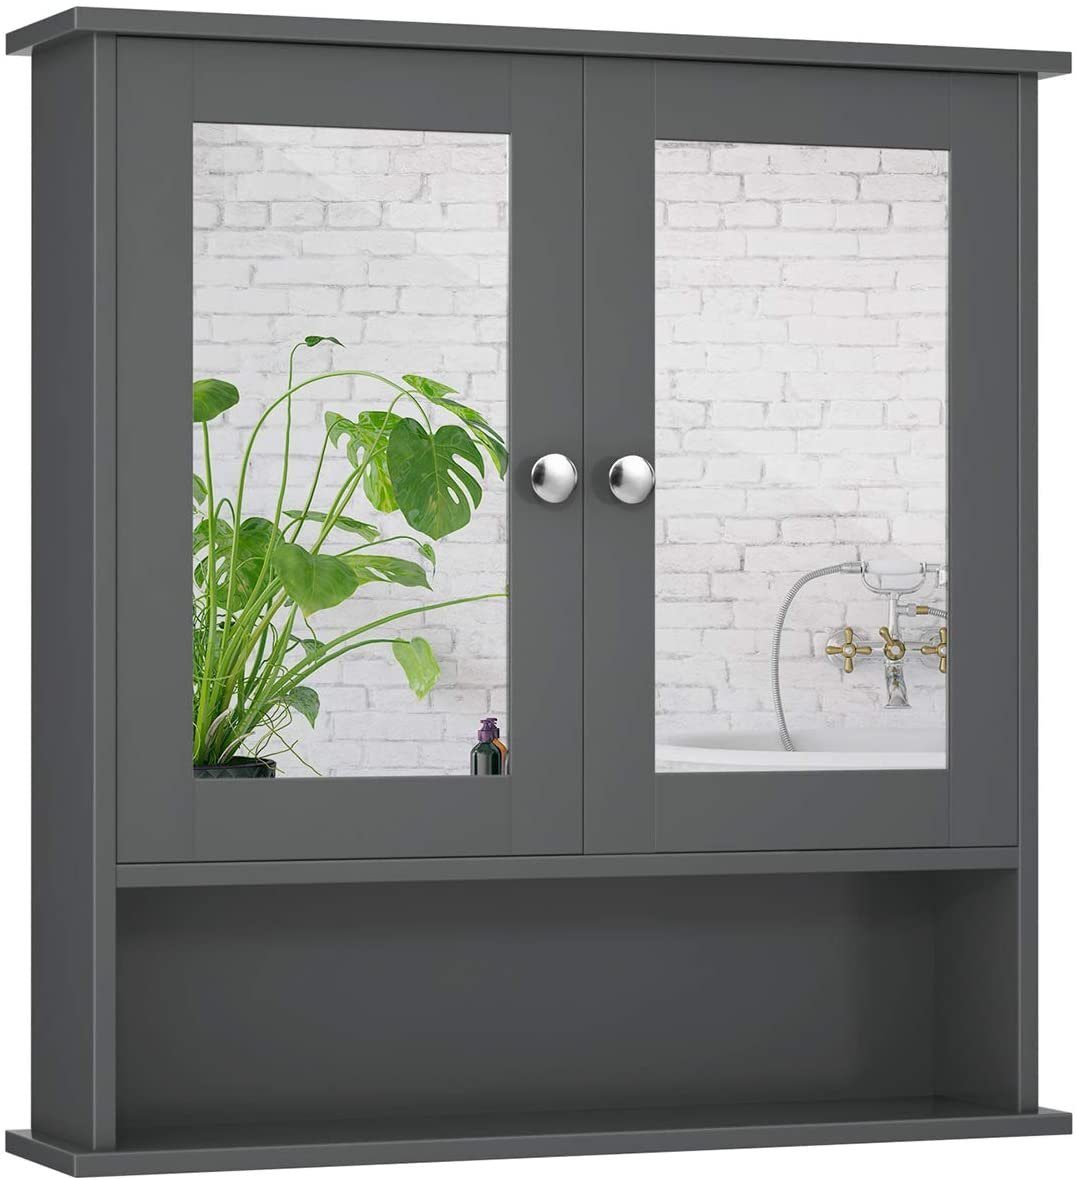 COSTWAY Spiegelschrank Badzimmerschrank mit höhenverstellbarer Ablage grau | Spiegelschränke